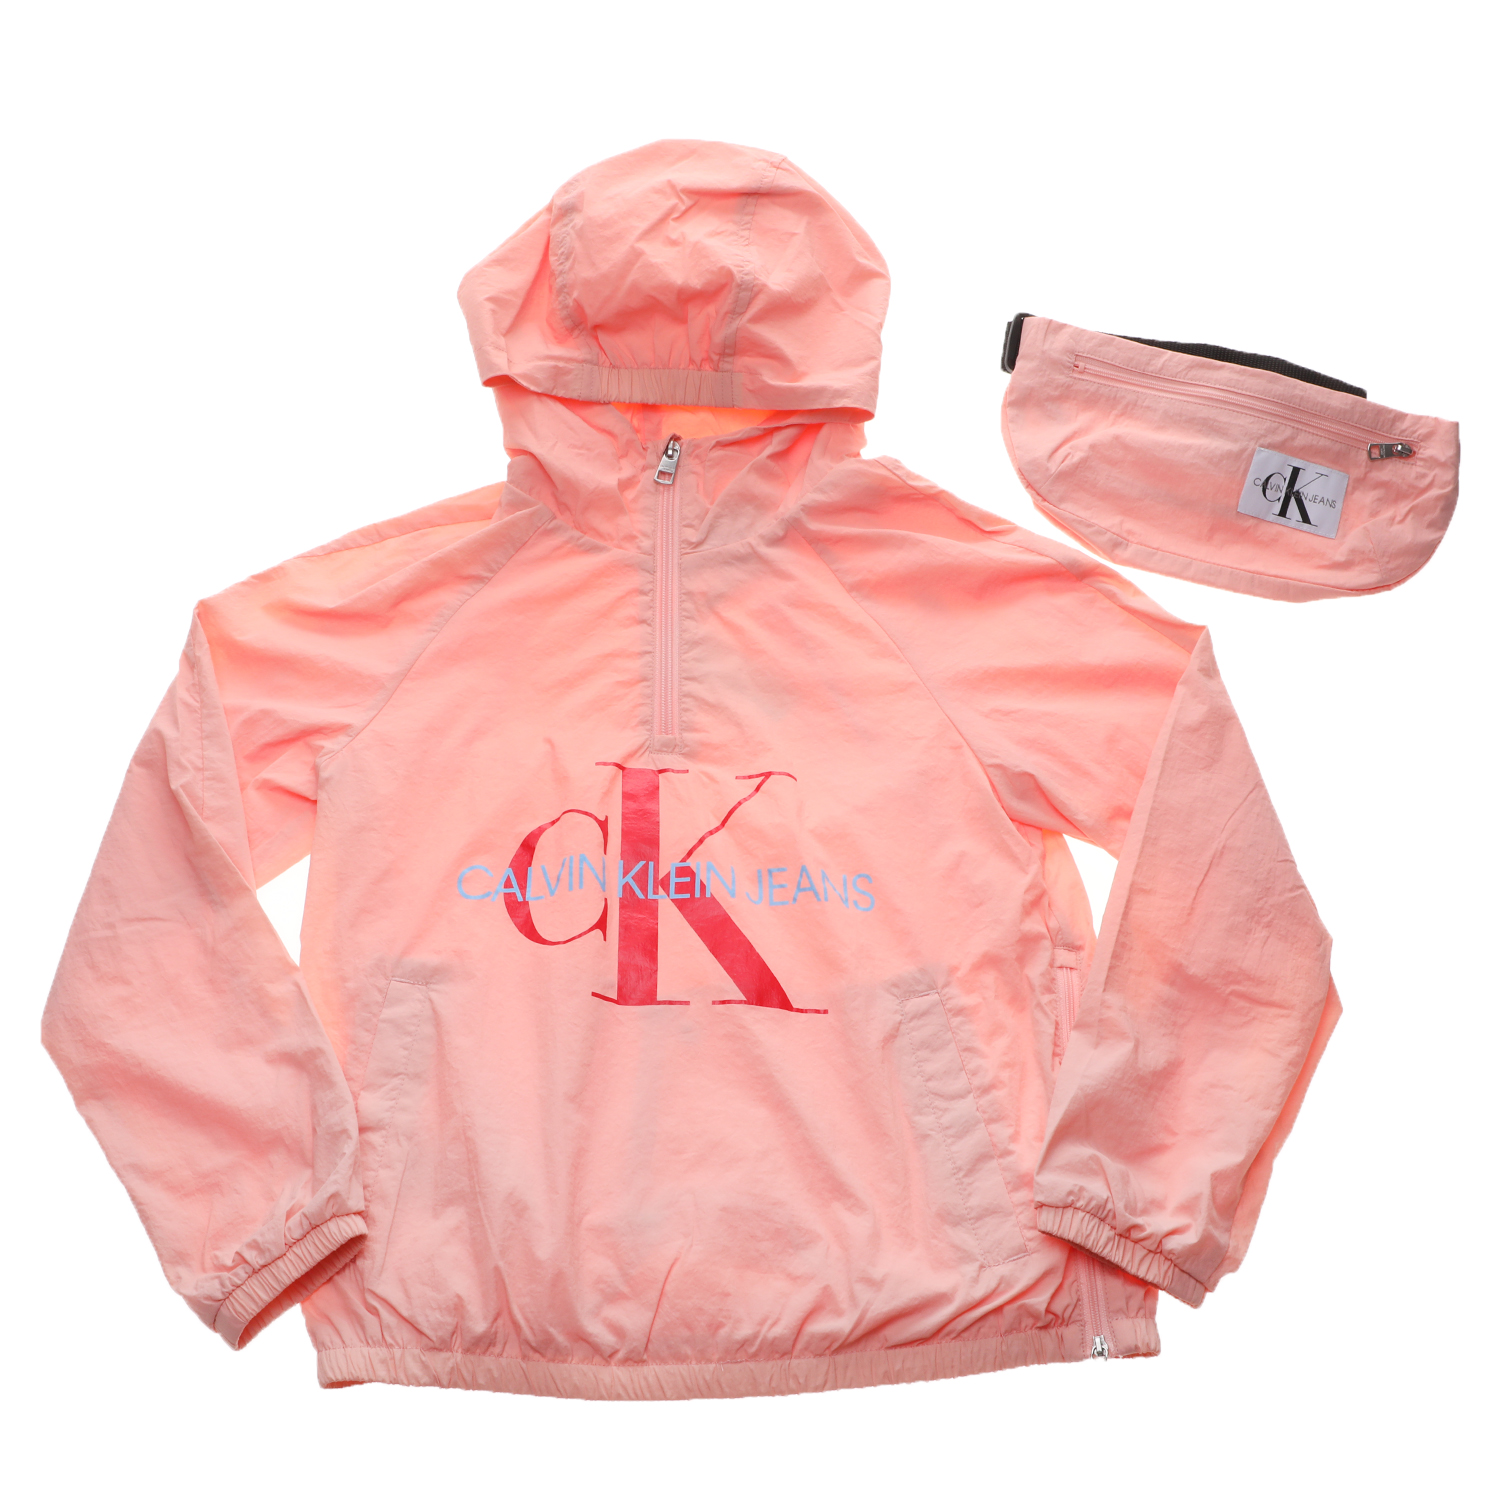 Παιδικά/Girls/Ρούχα/Πανωφόρια CALVIN KLEIN JEANS KIDS - Παιδικό αντιανεμικό jacket με τσαντάκι CALVIN KLEIN JEANS KIDS ροζ